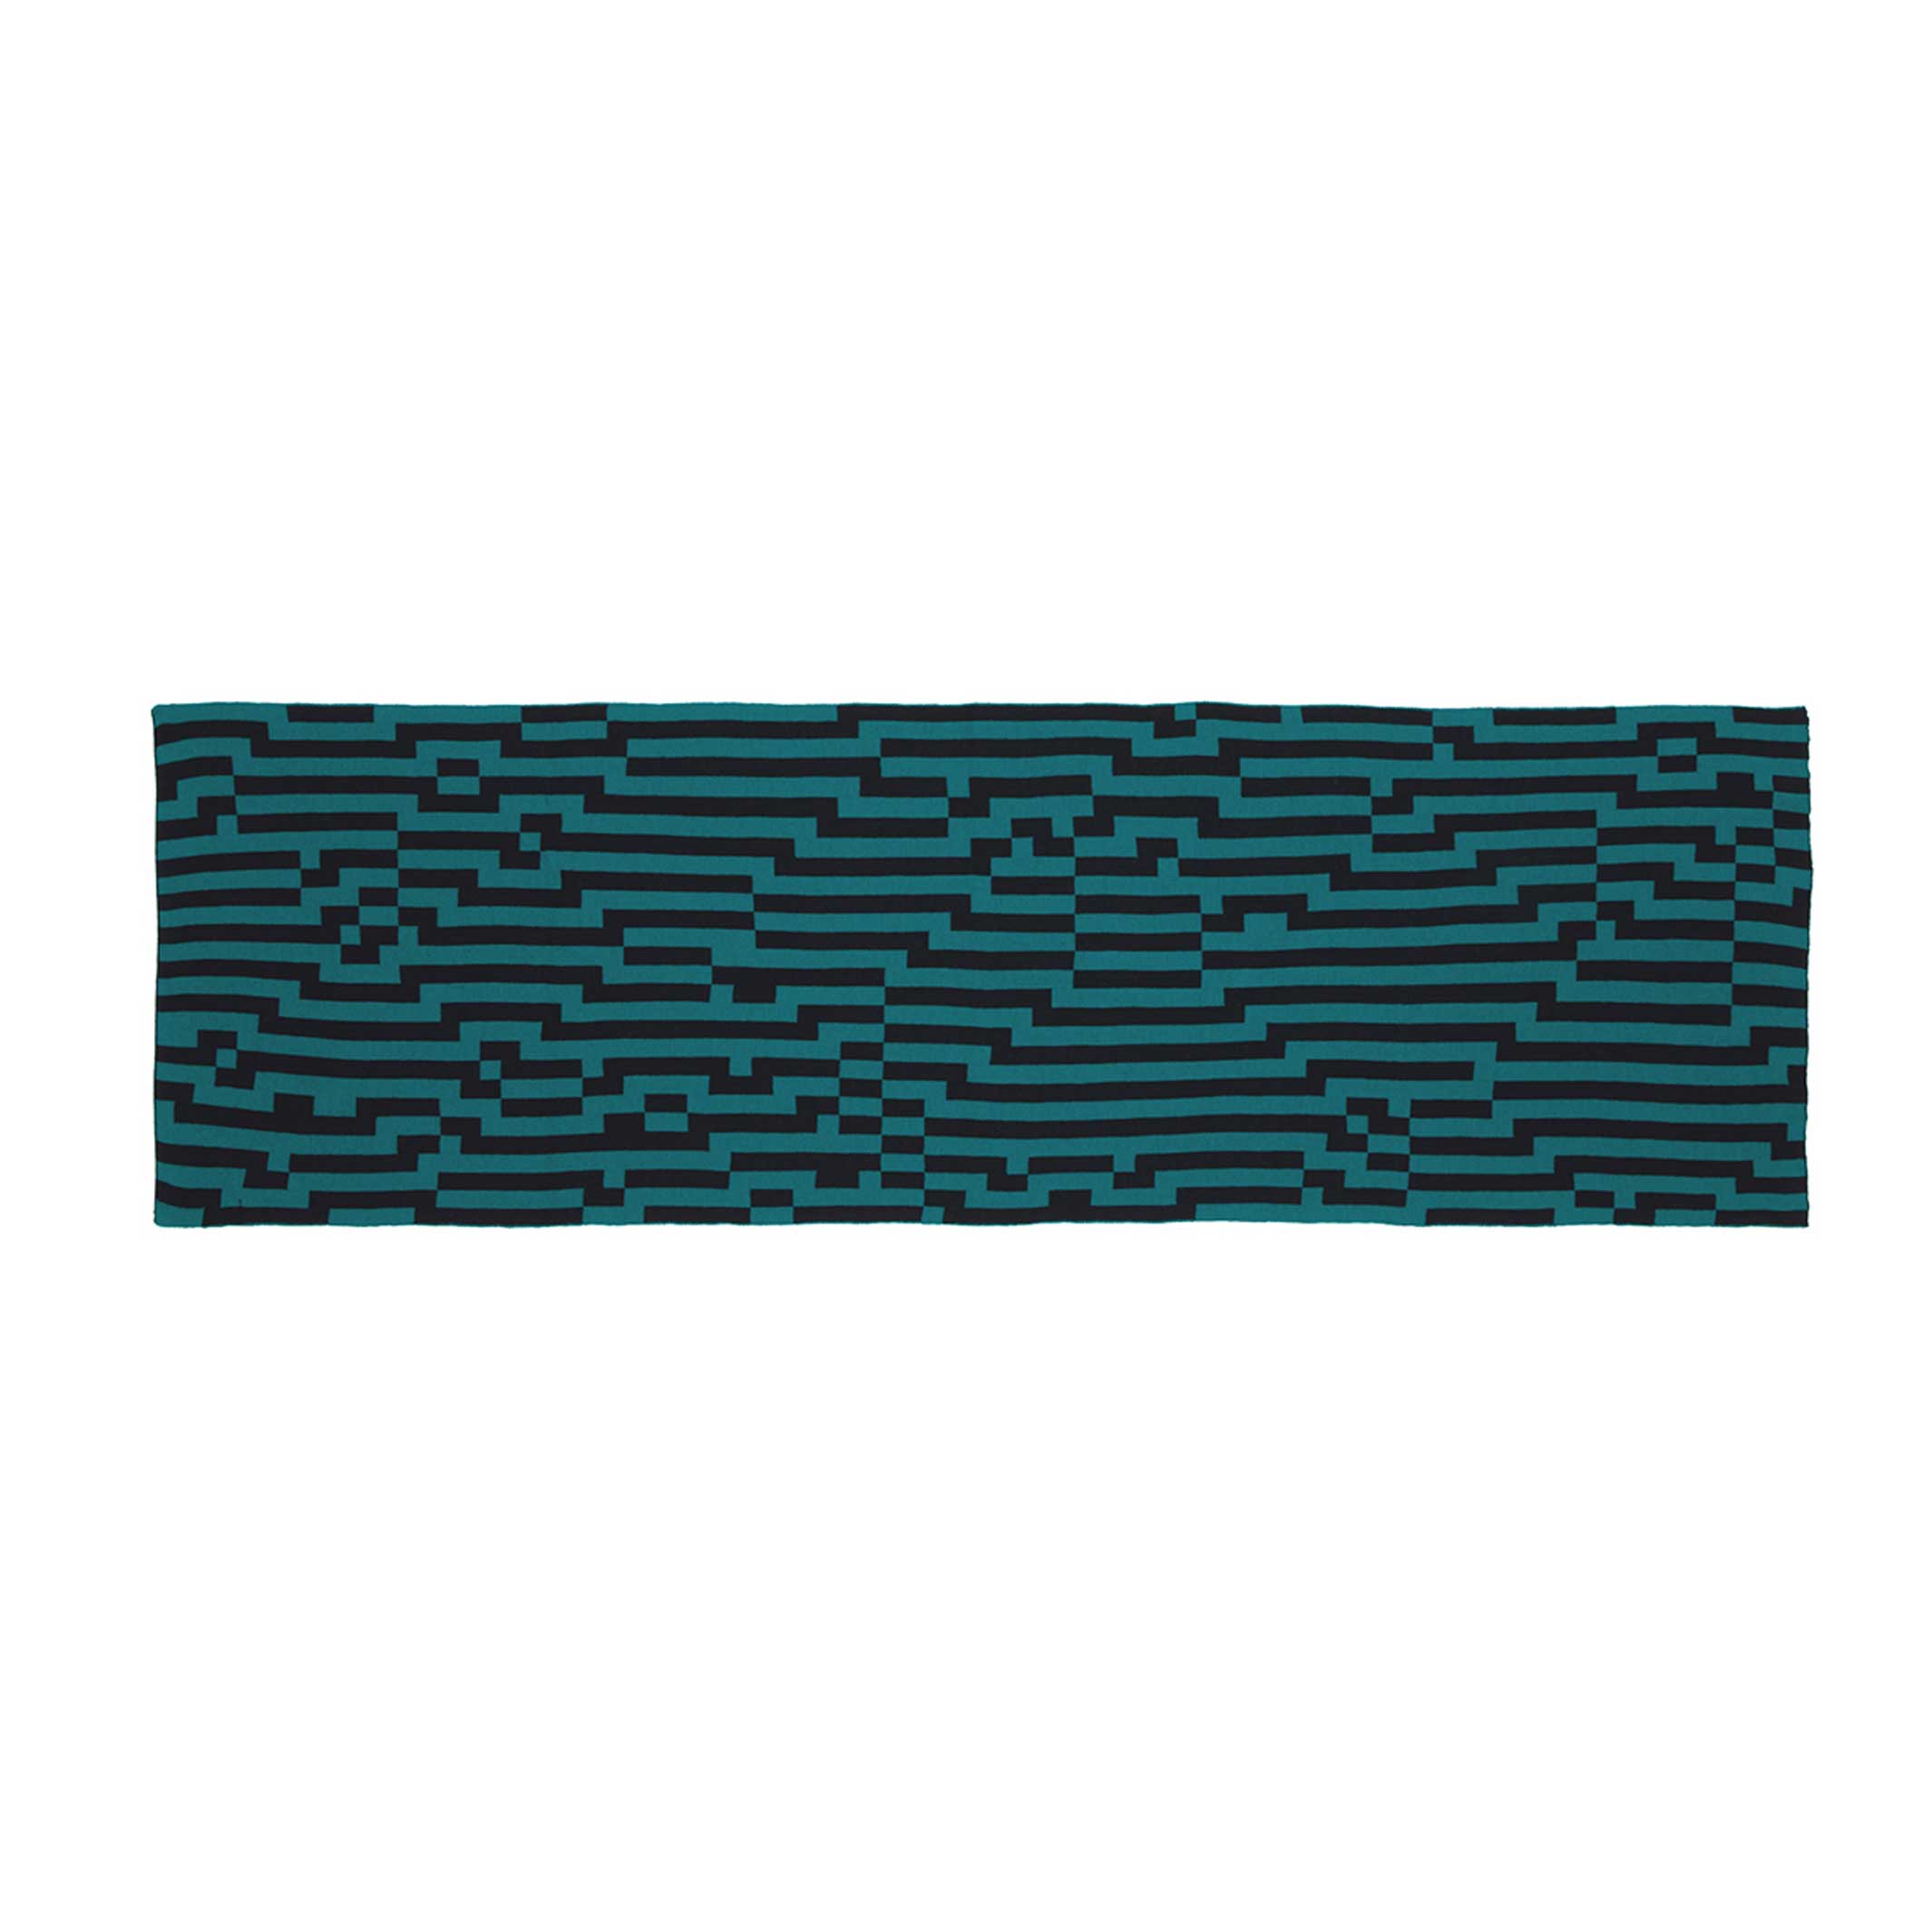 BITMAP ZOOM IN 4 | mintgrün & schwarze SCHAL-STOLA | 194x64 cm | 100% Merino Wolle | Cristian Zuzunaga